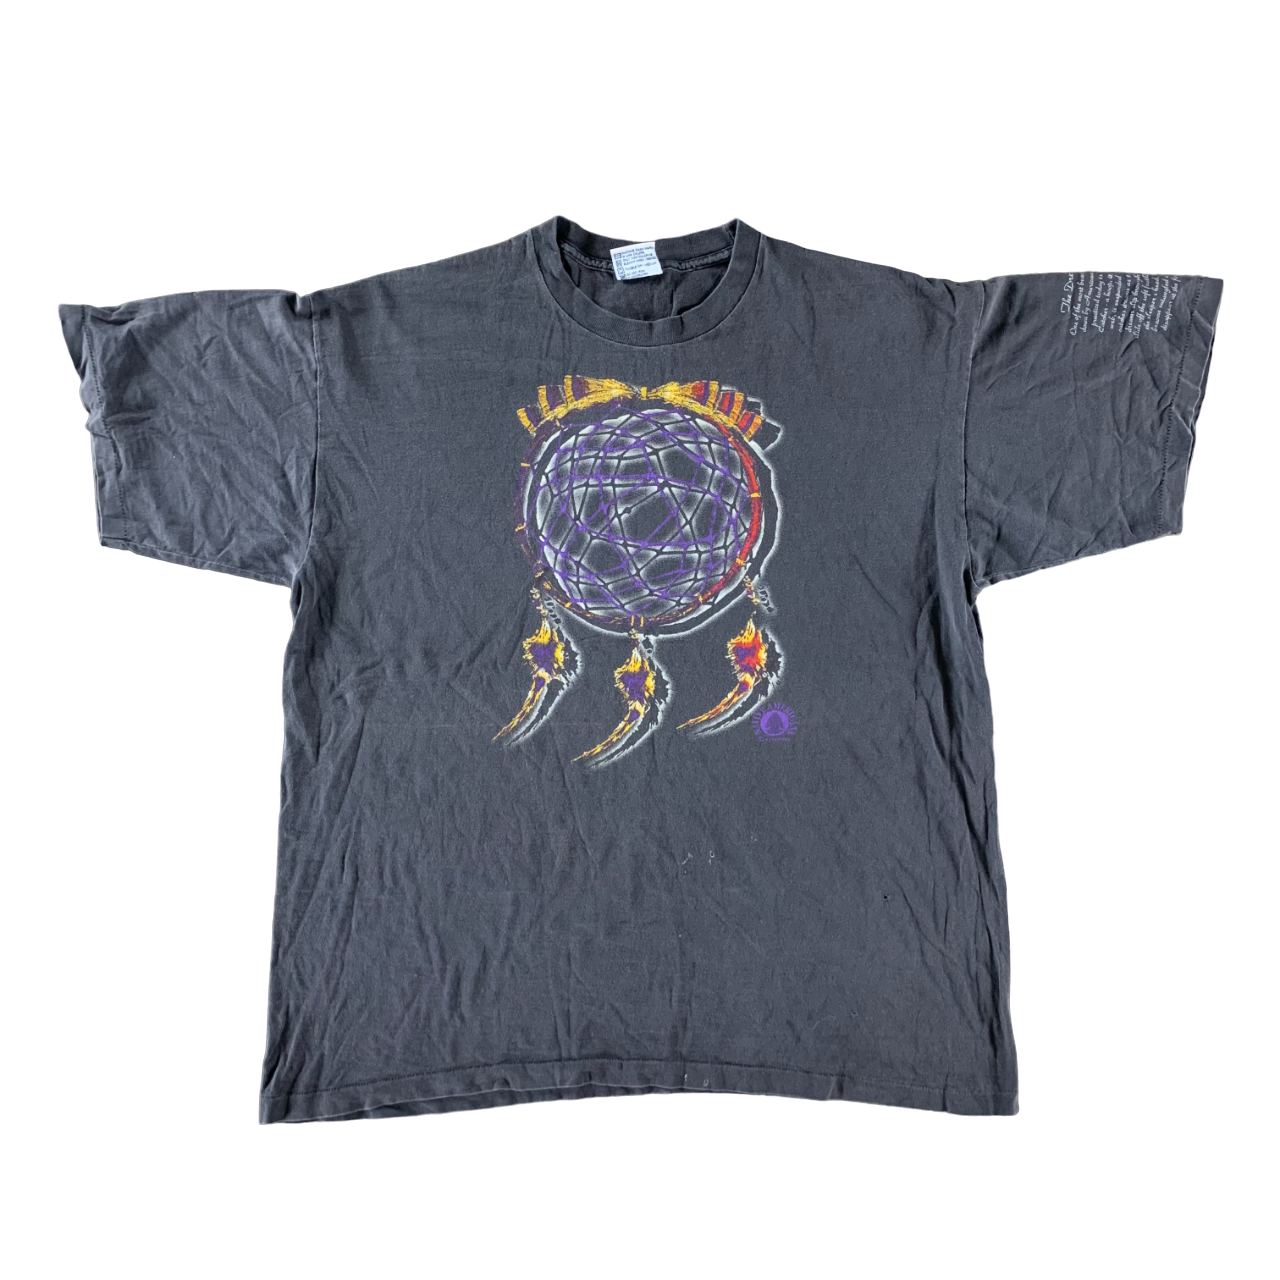 Vintage 1990s Dream Catcher T-shirt size XL